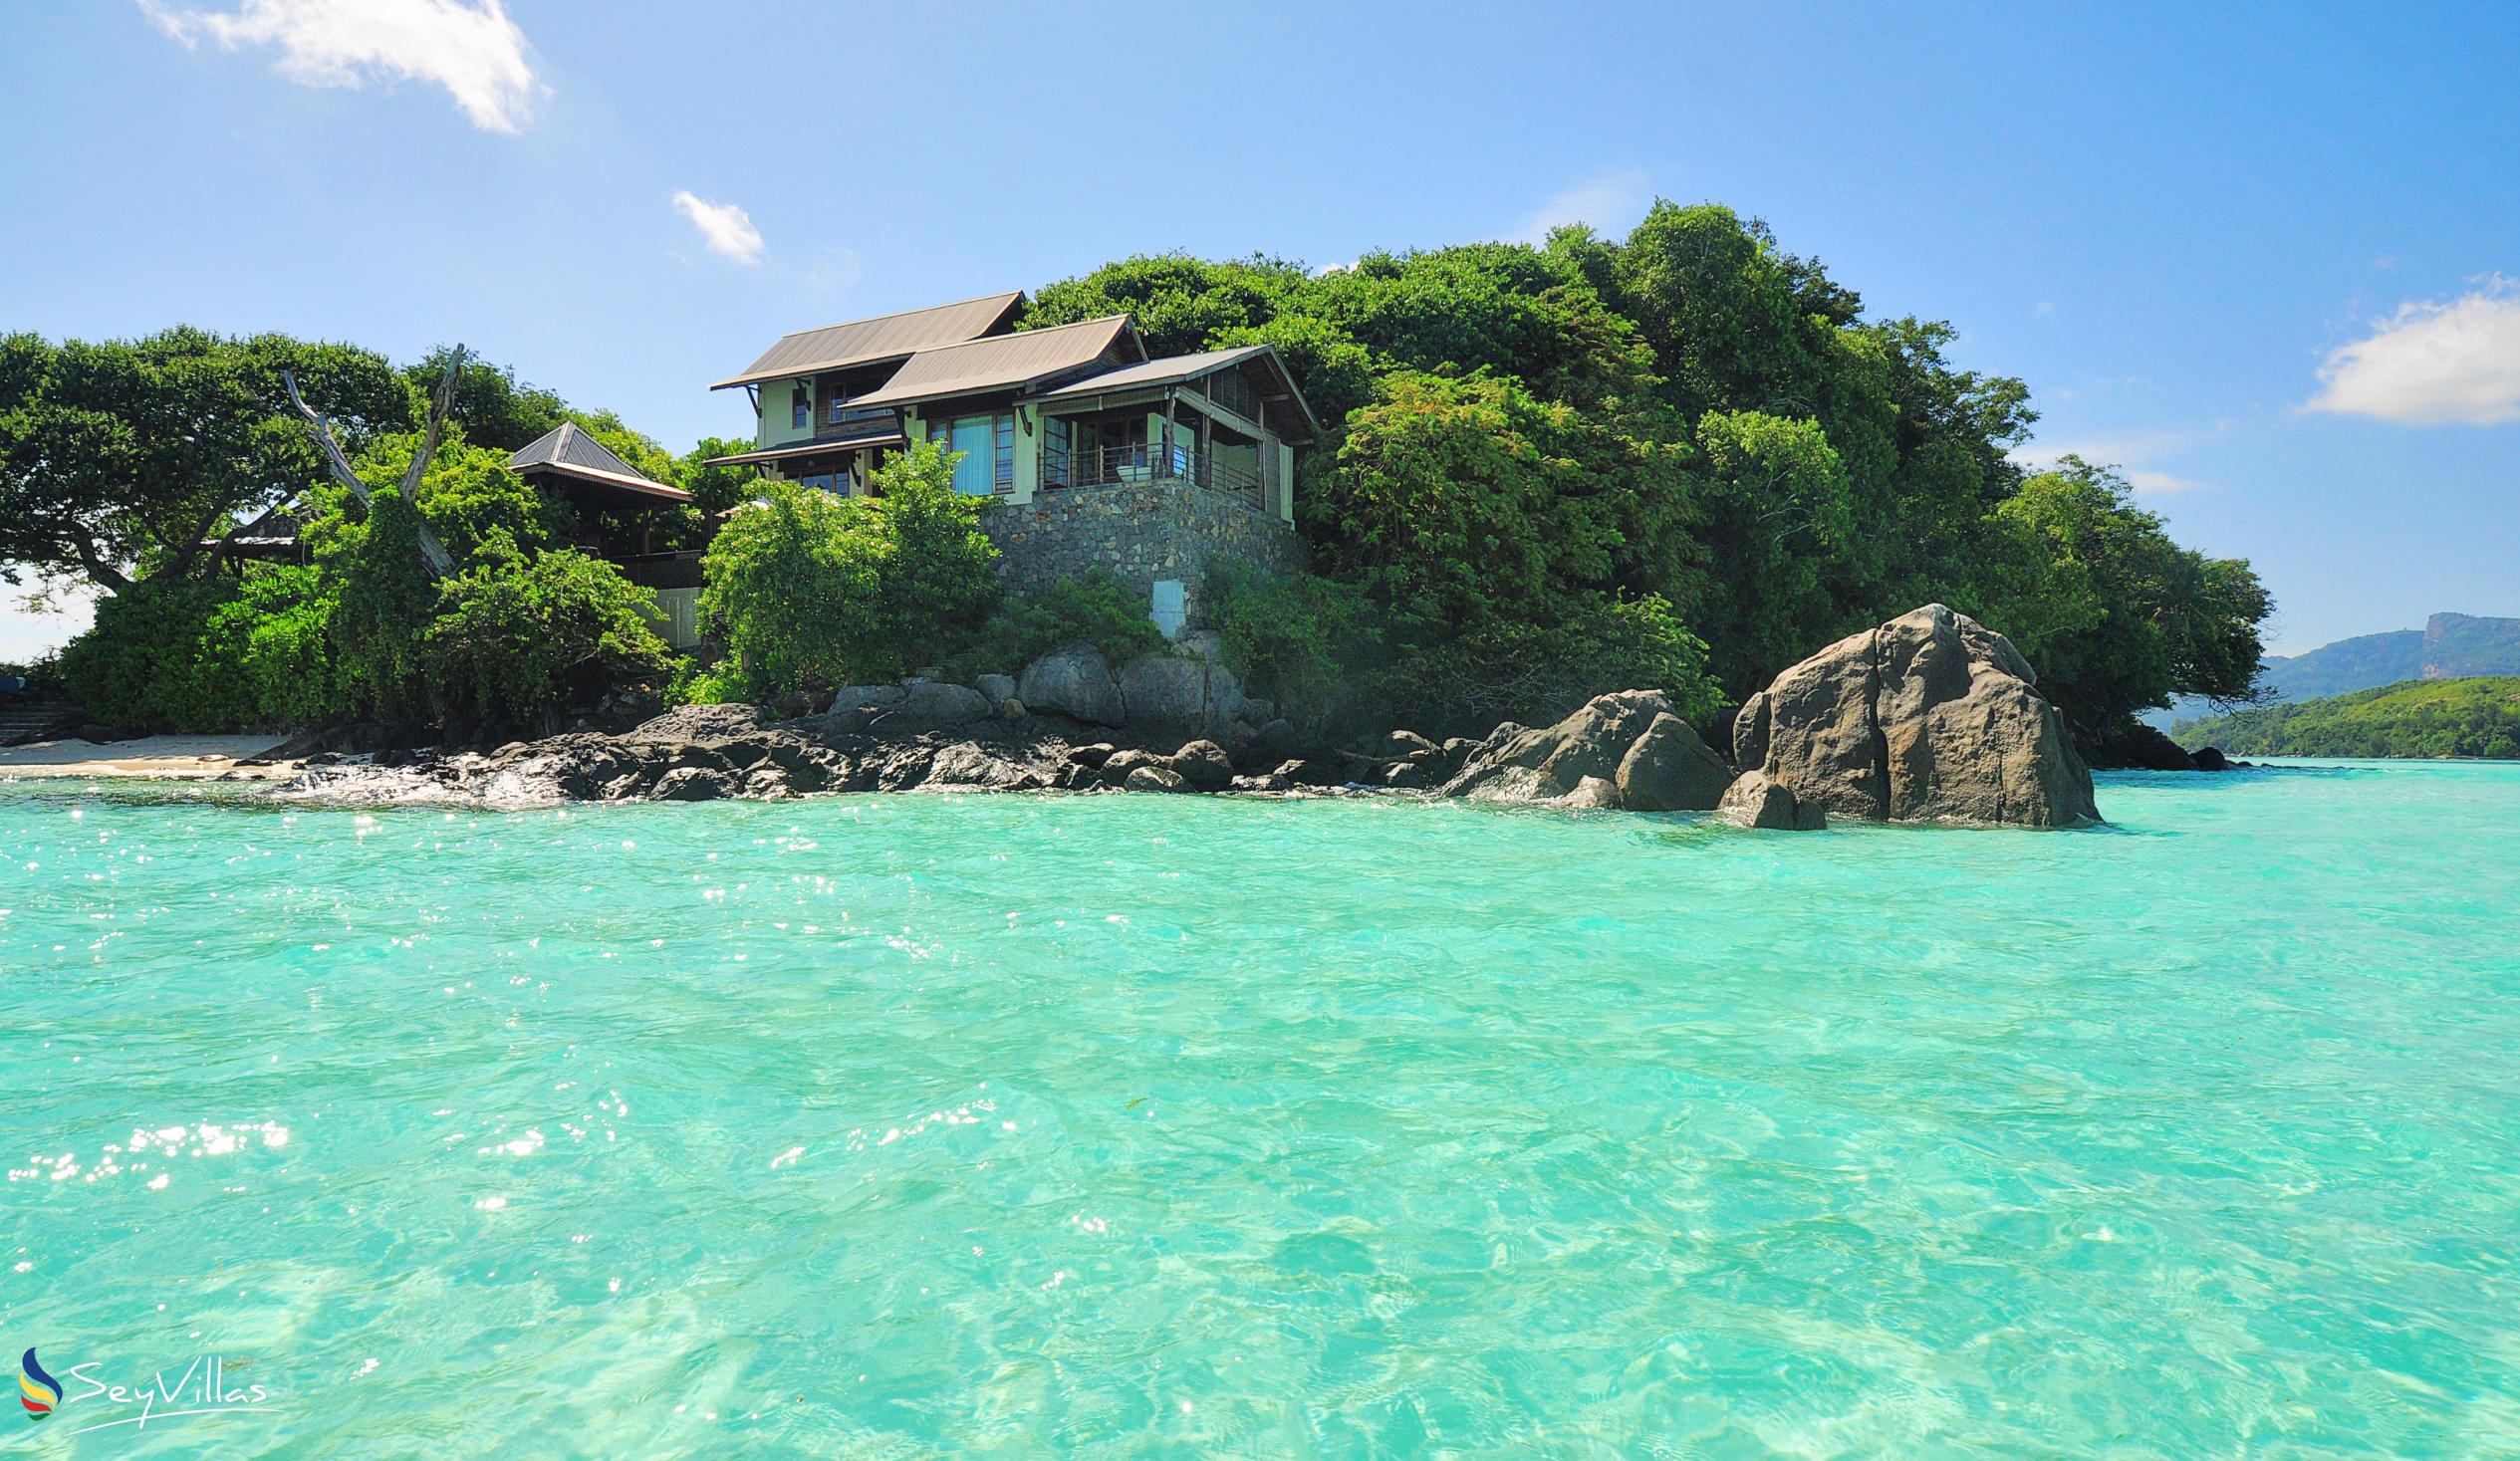 Foto 4: JA Enchanted Island Resort - Aussenbereich - Round Island (Seychellen)